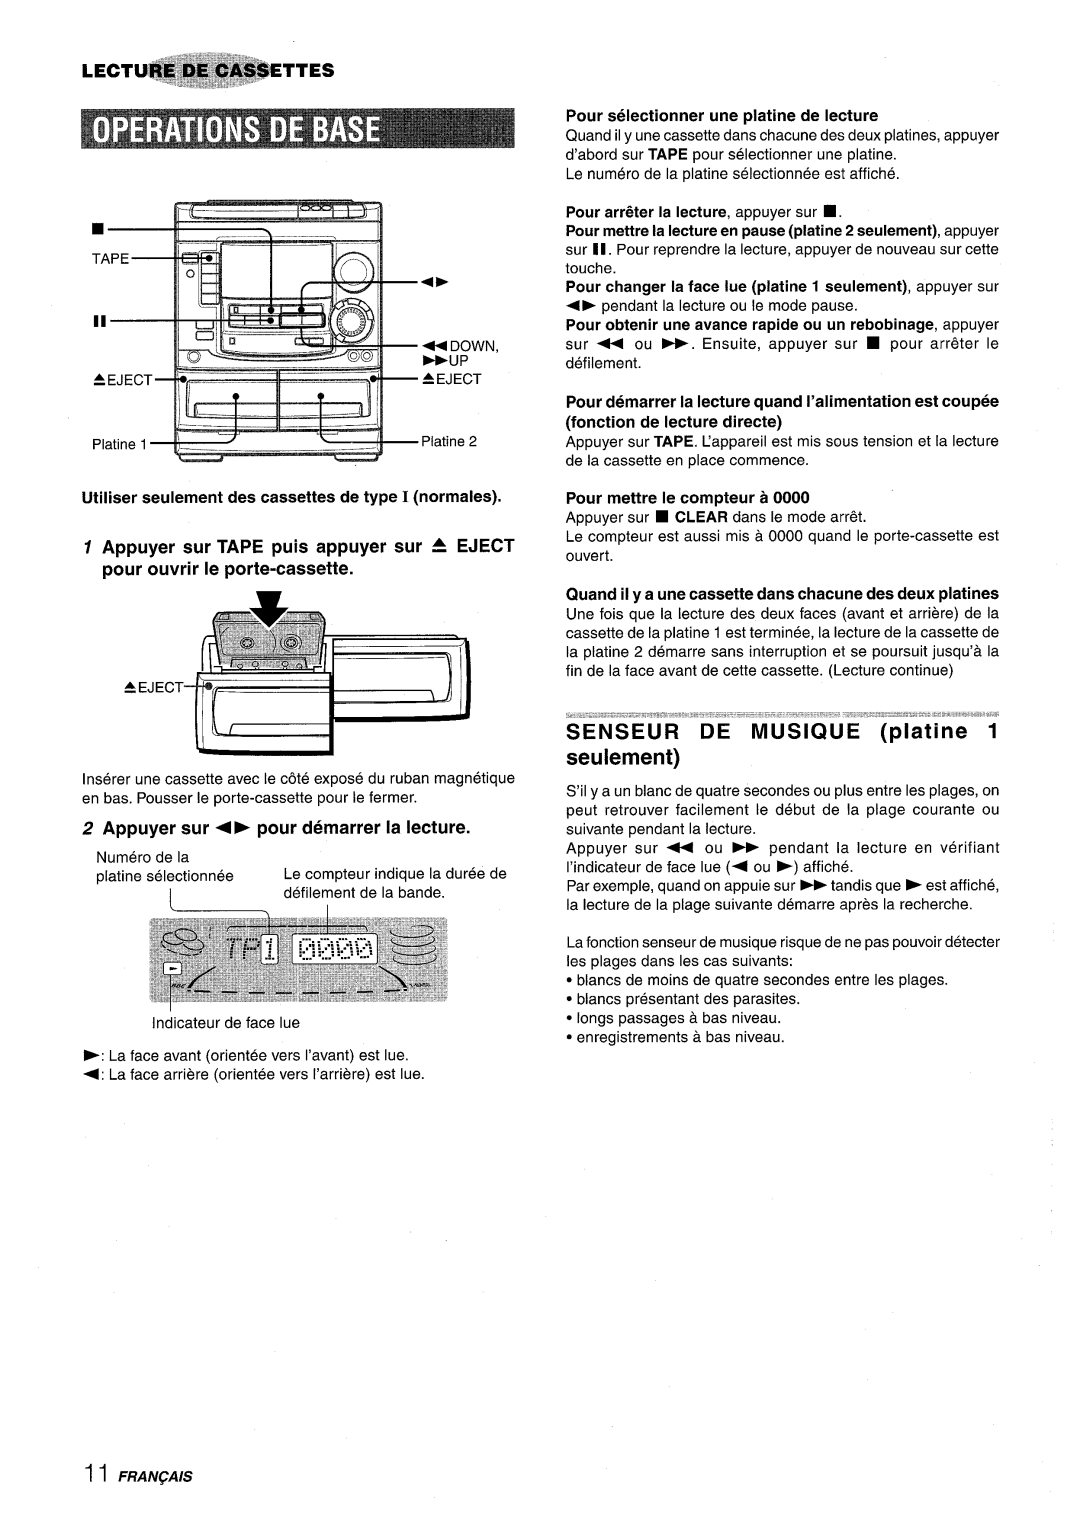 Aiwa NSX-A508 manual “’’c”, Utiliser seulement des cassettes de type I normales, Appuyer sur P pour demarrer la lecture 